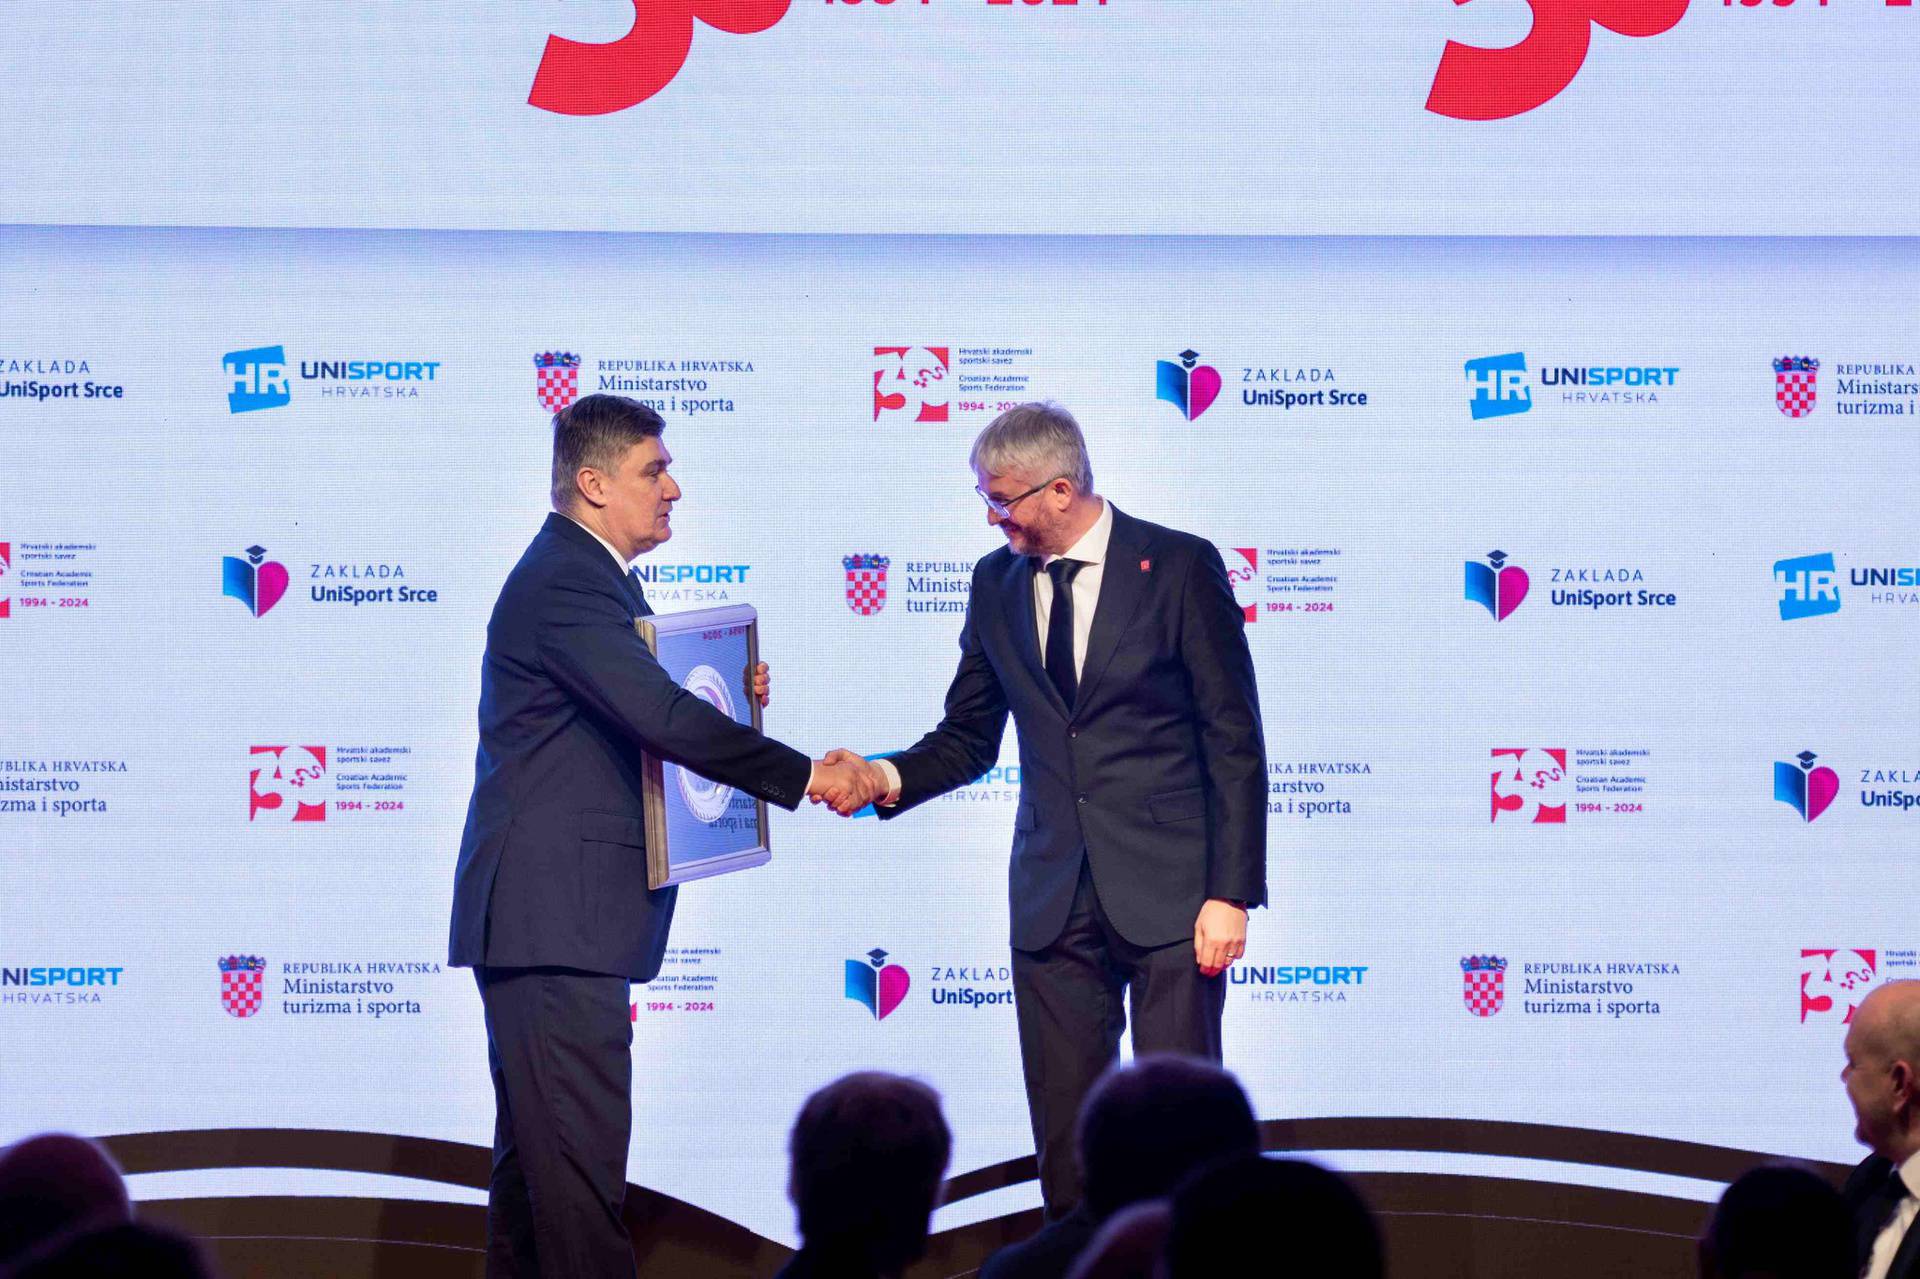 Zagreb Advent Run dodijelio je 4000 € Zakladi UniSport Srce